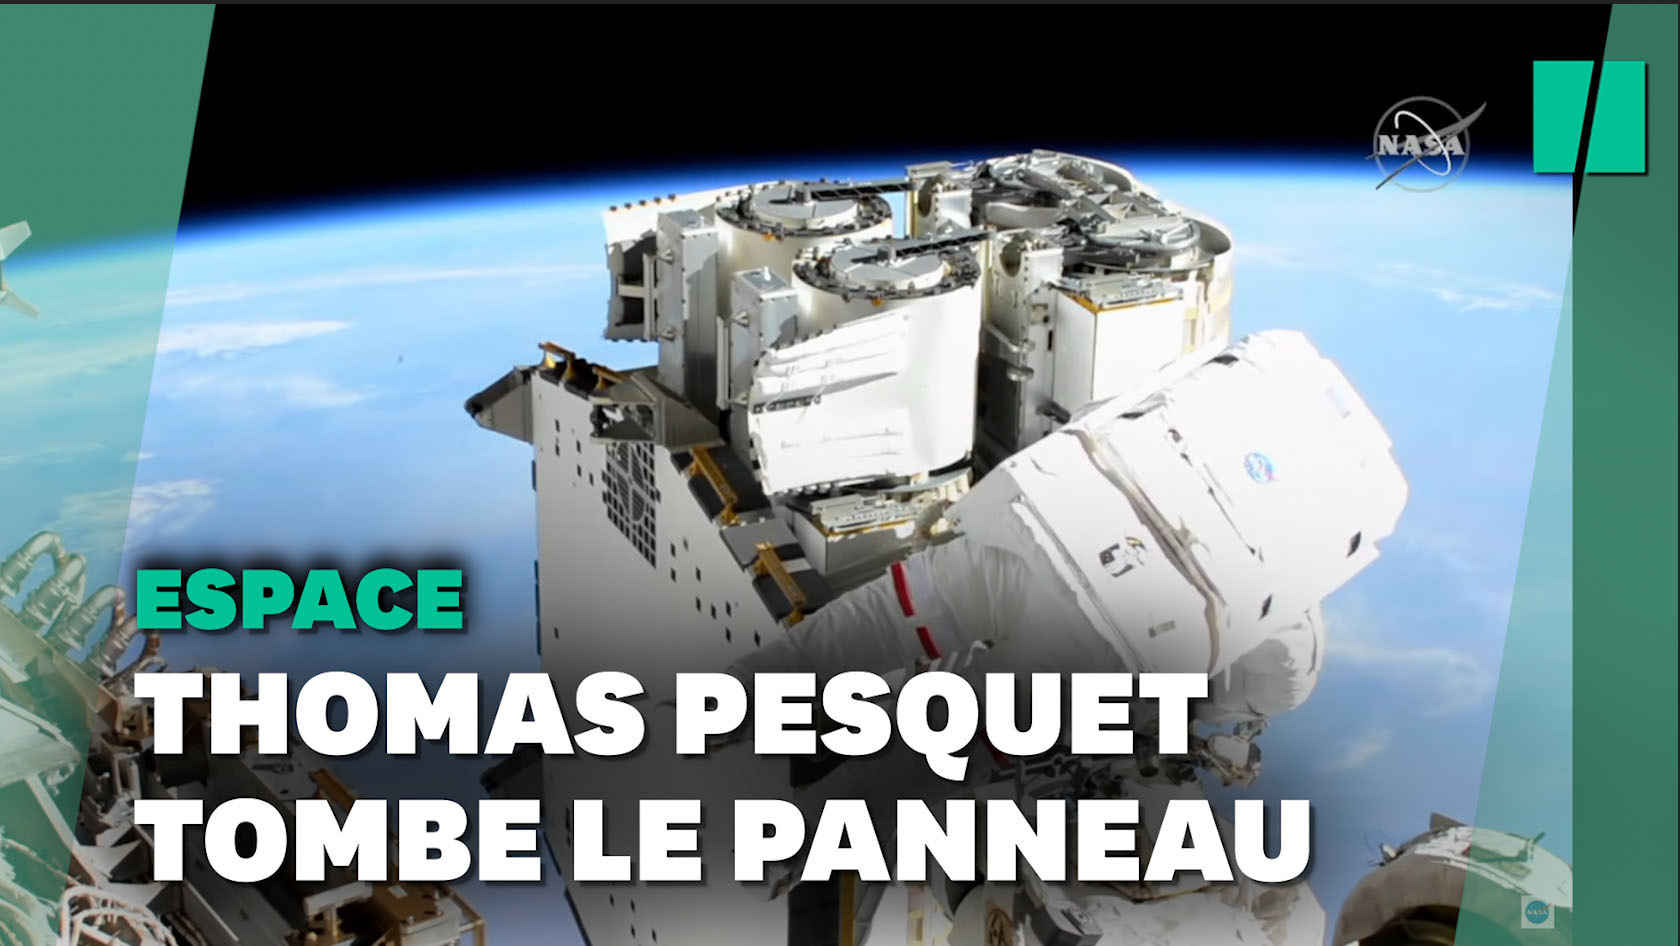 Les 1ères images de la sortie de Thomas Pesquet dans l'espace